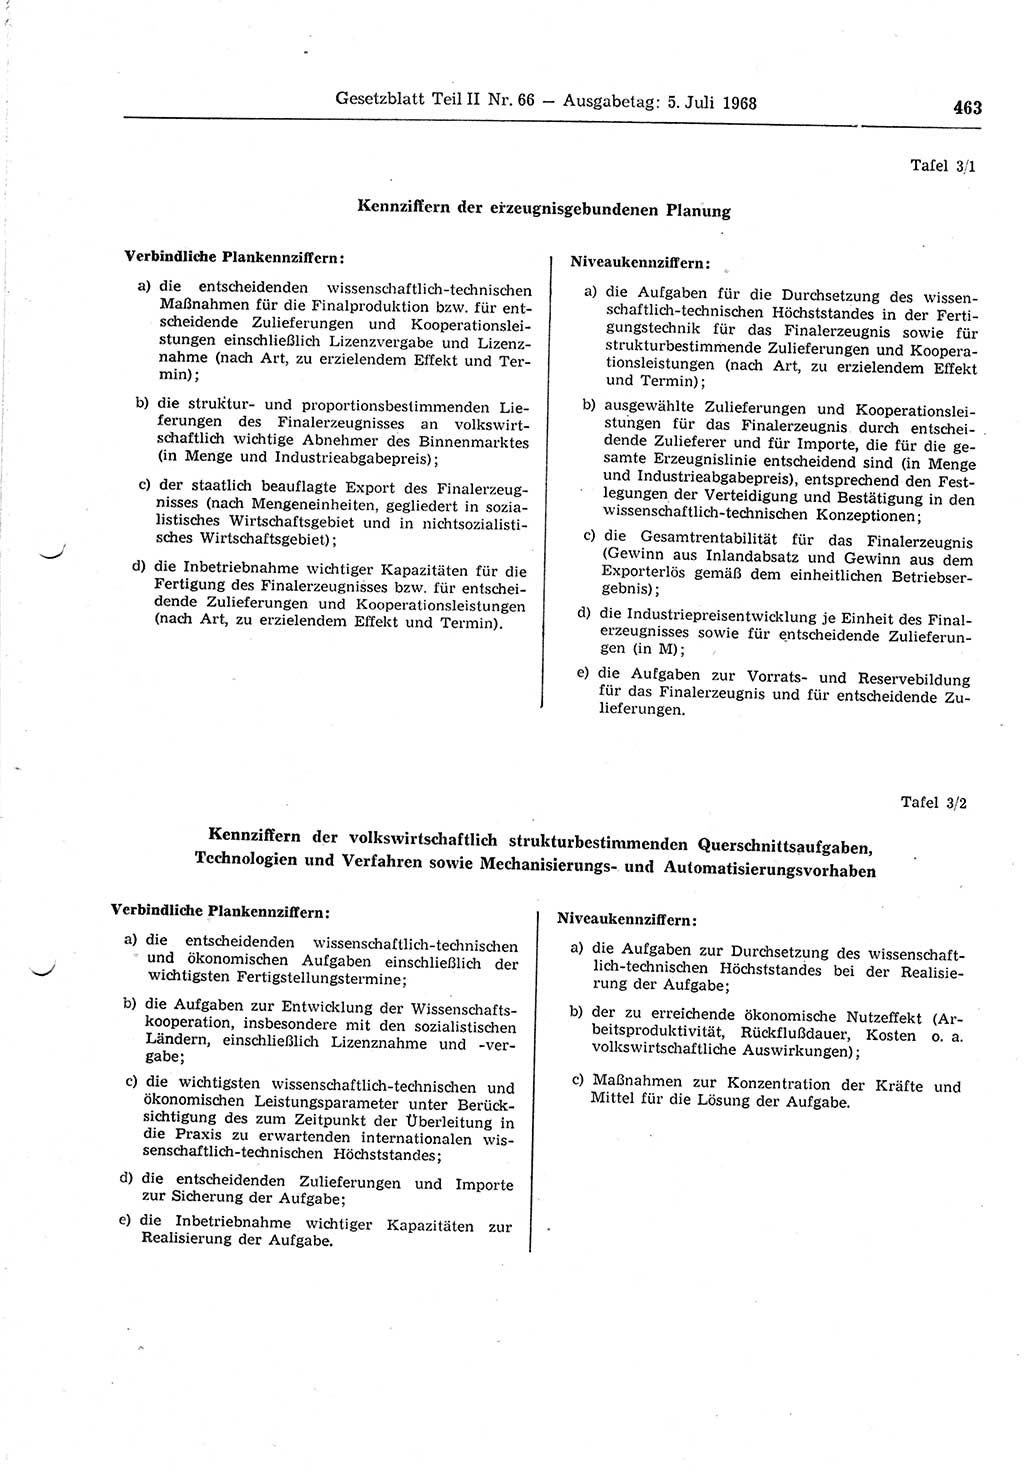 Gesetzblatt (GBl.) der Deutschen Demokratischen Republik (DDR) Teil ⅠⅠ 1968, Seite 463 (GBl. DDR ⅠⅠ 1968, S. 463)